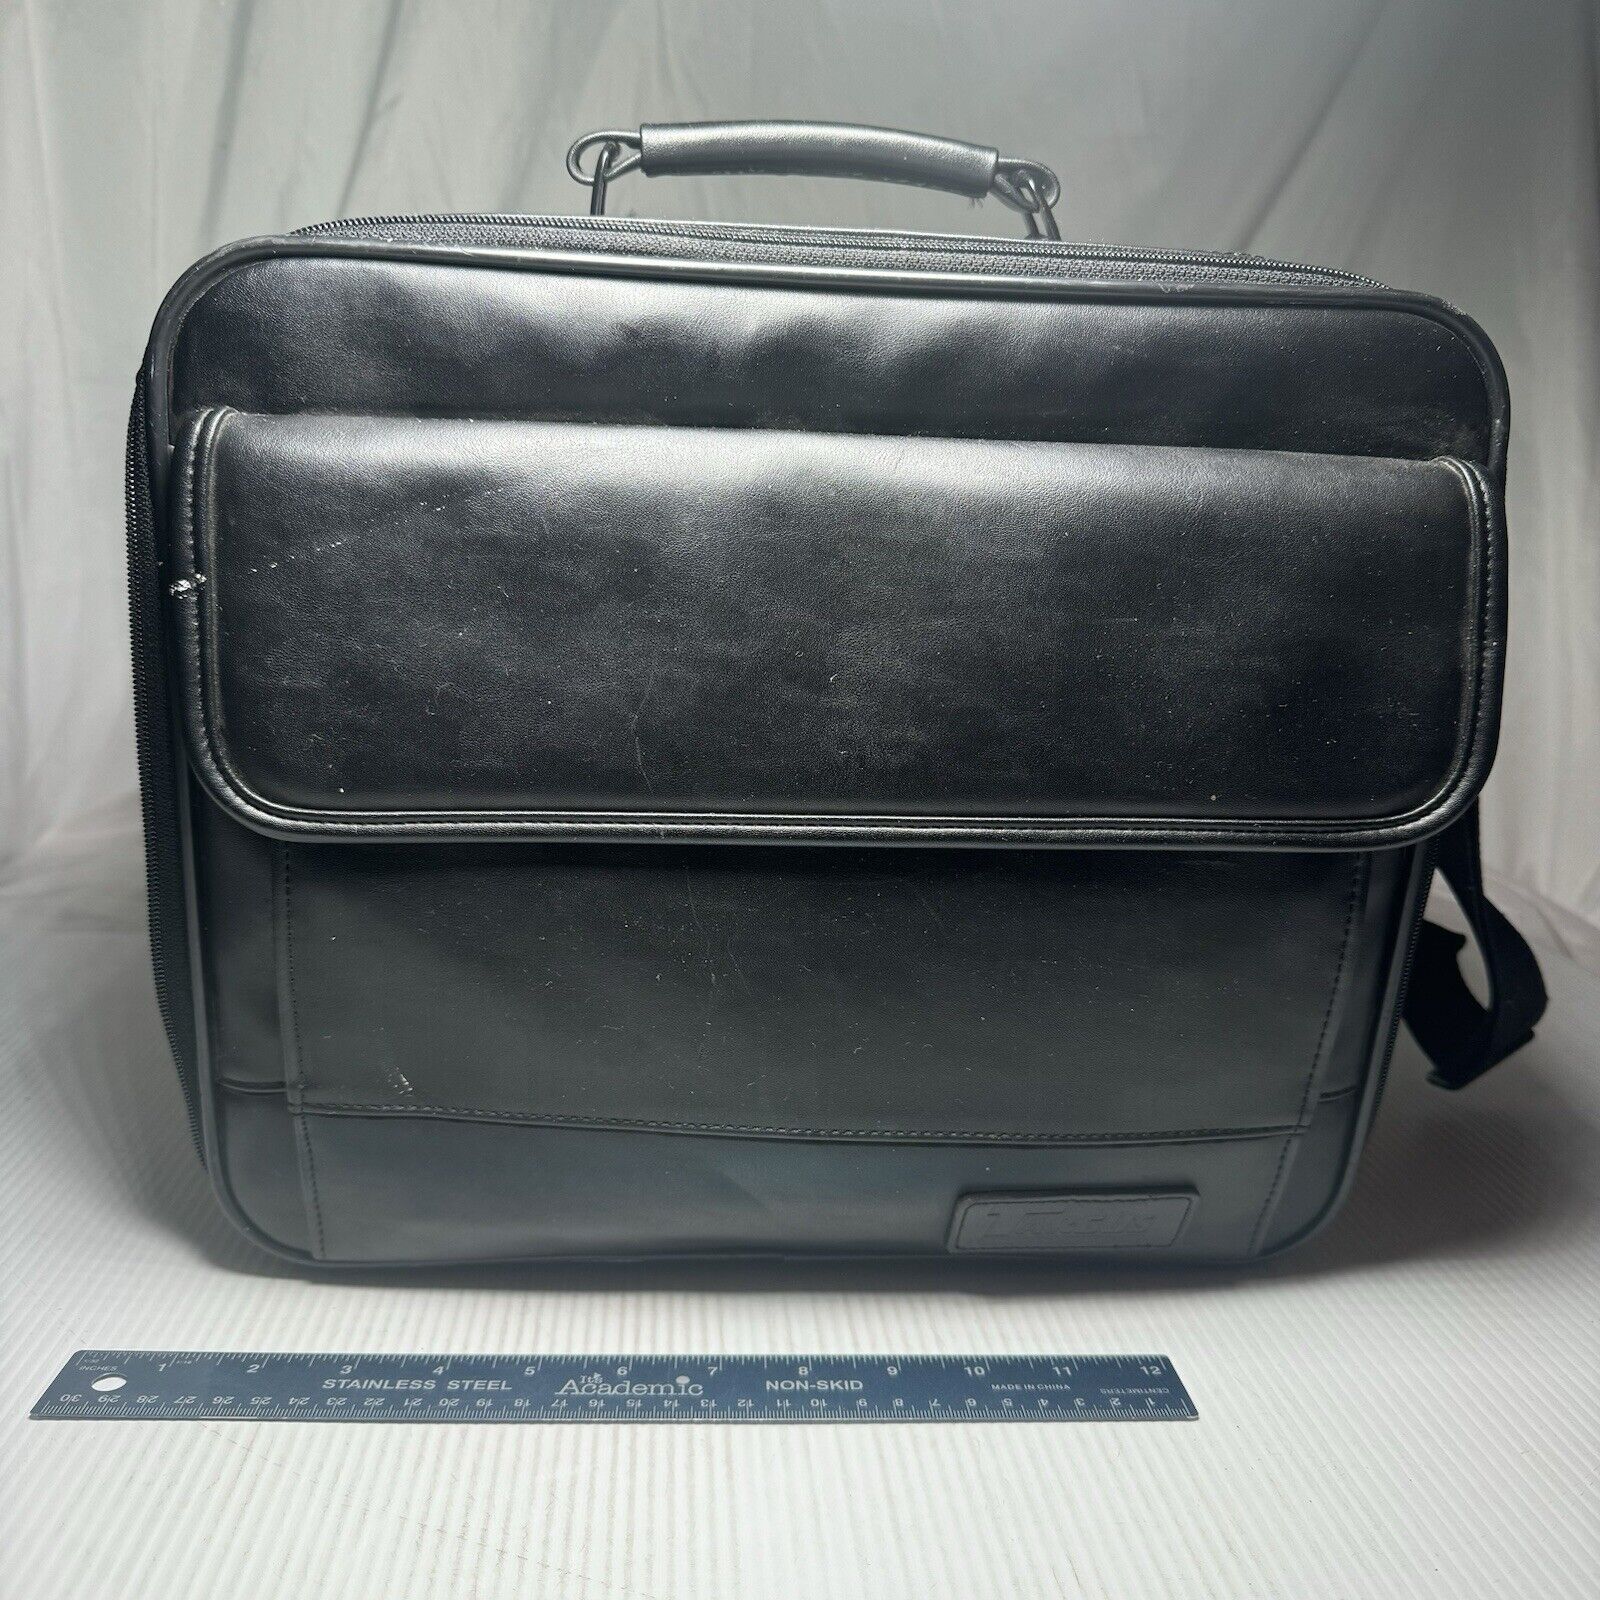 Targus OCU2 Laptop Computer Case Bag Padded Carry On Shoulder Strap Luggage